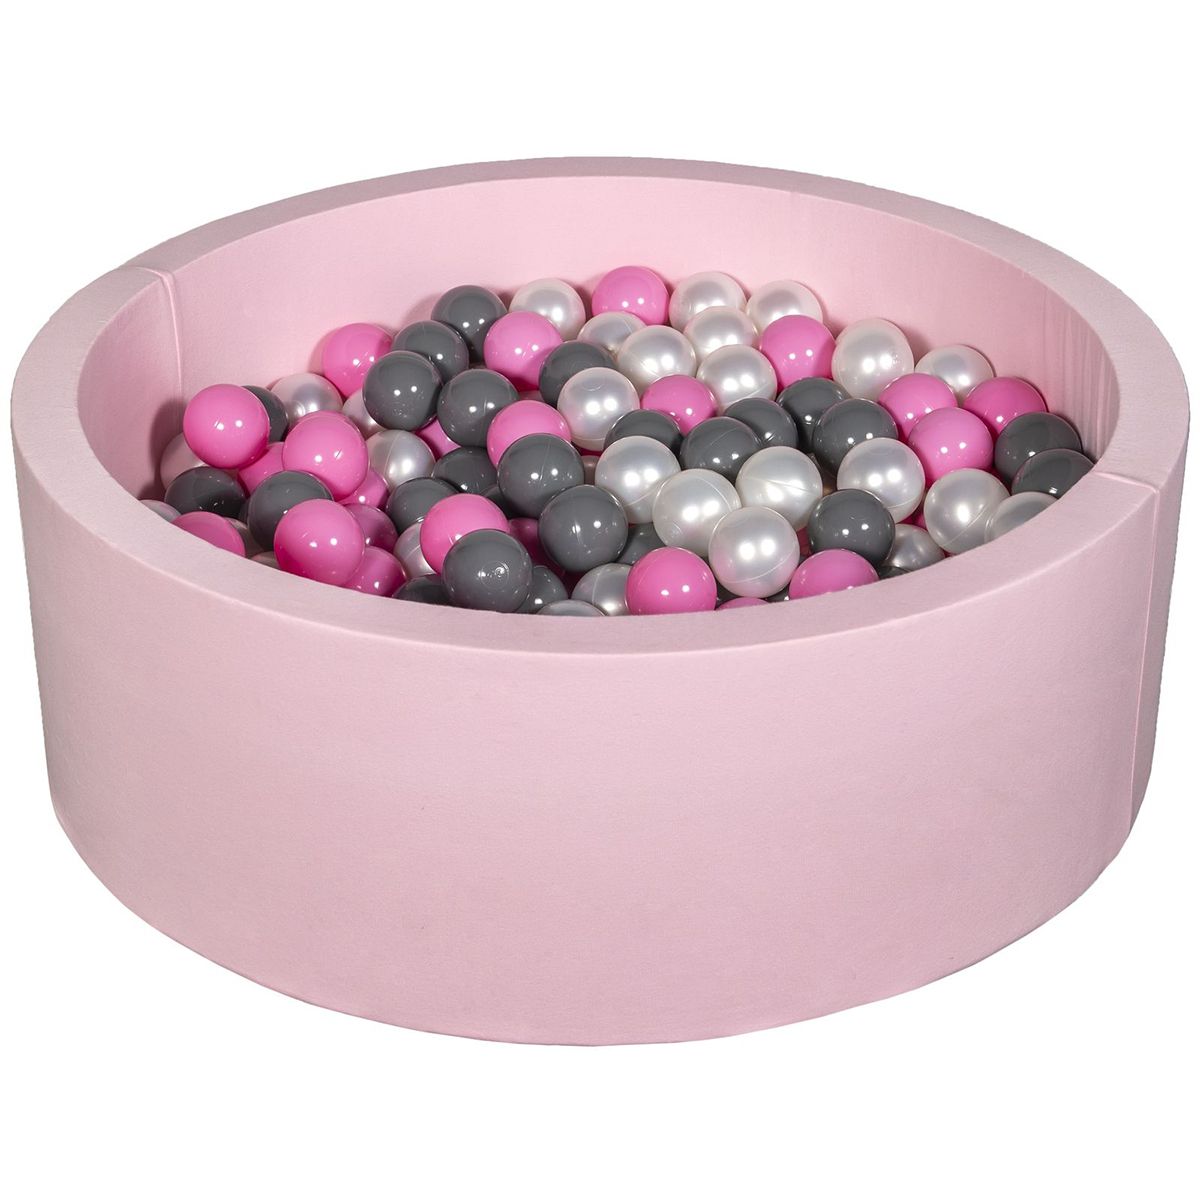  Piscine à balles Aire de jeu + 200 balles rose perle, rose clair, gris